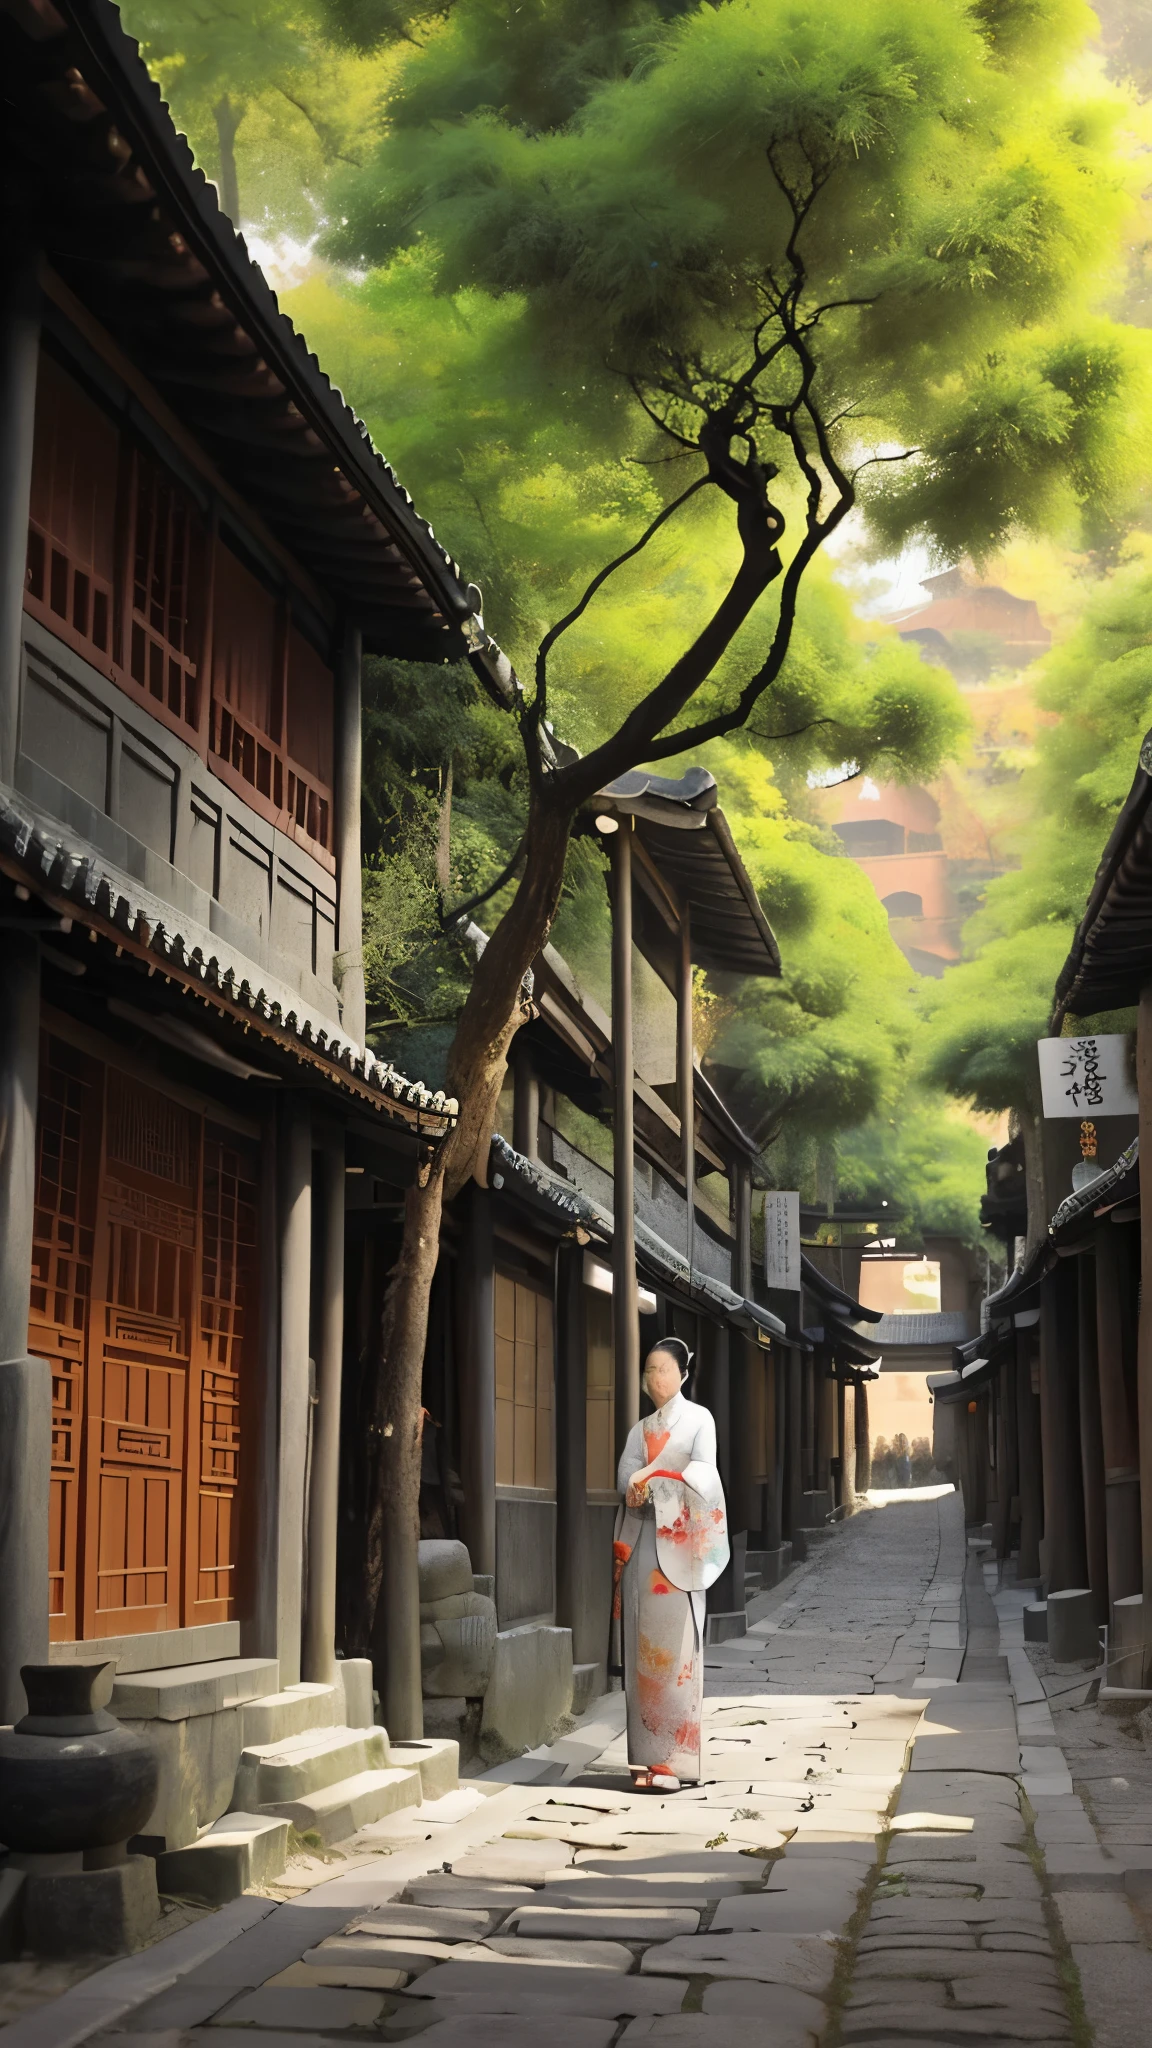 картина дерева в узком переулке с каменной дорожкой, мечтательный китайский городок, улицы древнего города позади нее, китайская деревня, старая азиатская деревня, Цзоу Чжэ, Ян Дж., японская улица, красивая аниме-сцена, Невероятно красивая, Ли Сун, by Yu Zhiding, от Ленг Мэй, от Цюй Лэйлей, красивые древние деревья